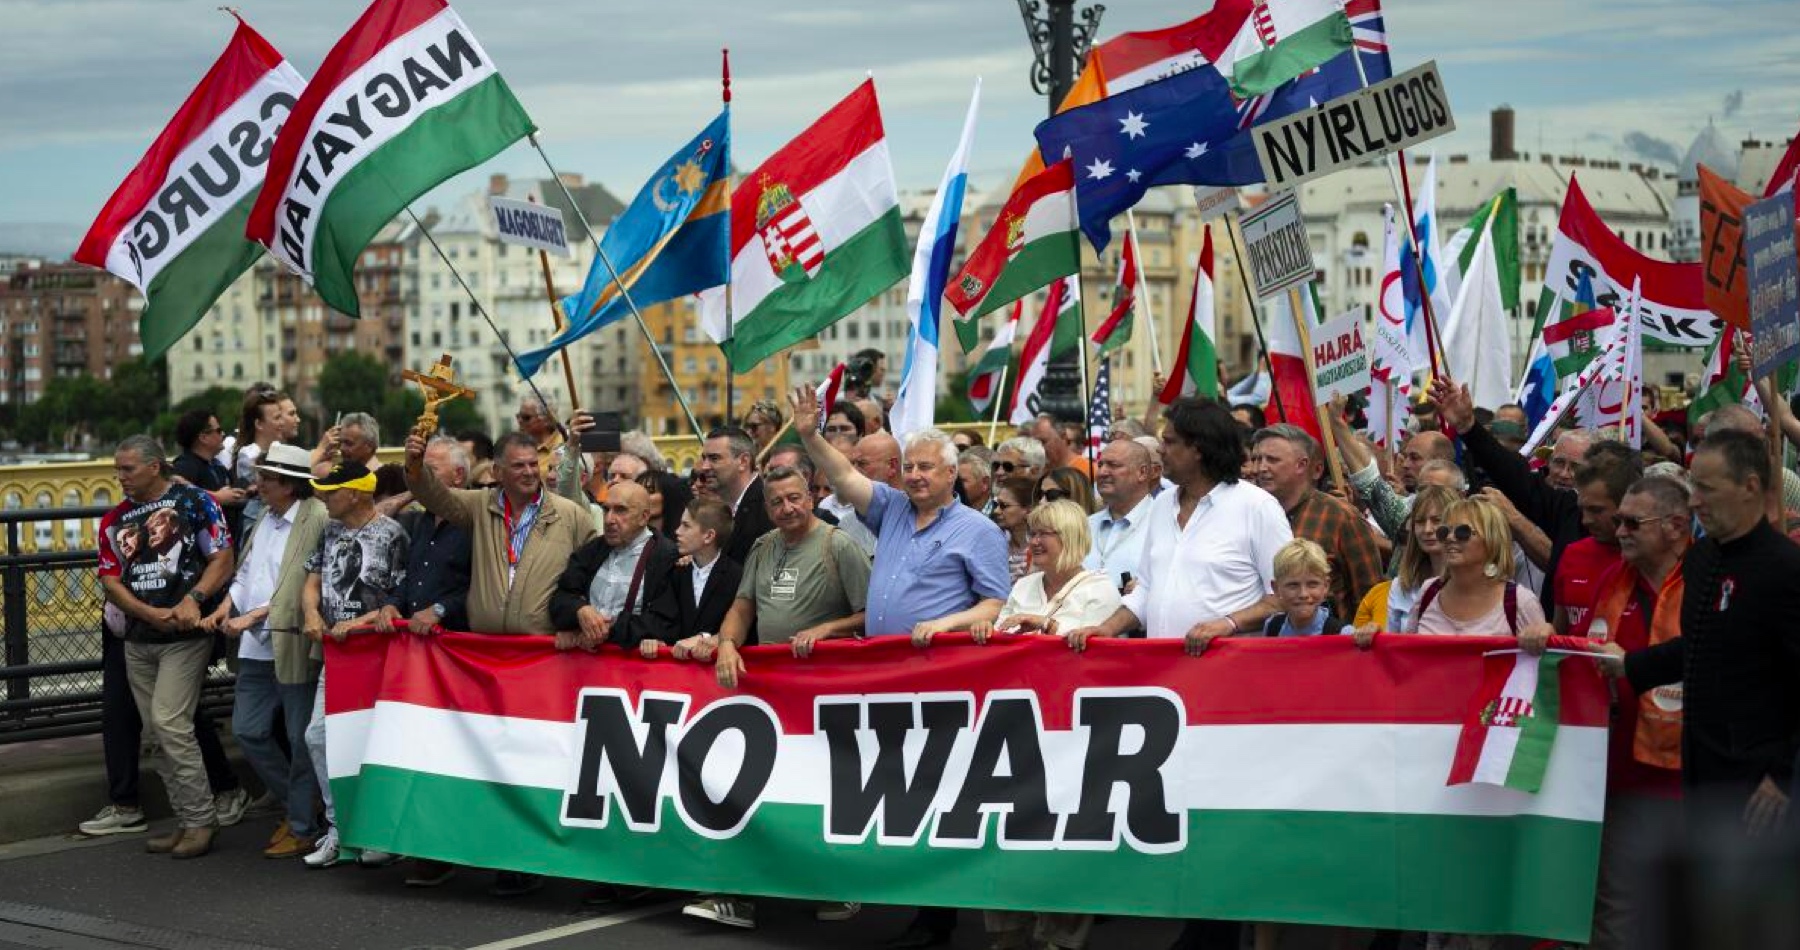 VIDEO: V Budapešti sa pred eurovoľbami konala masová demonštrácia „Pochod mieru“. Viktor Orbán vo svojom prejave varoval pred cestou do pekiel snahami rozmiestniť jadrové zbrane v Strednej Európe a zatiahnuť celý náš kontinent do vojny proti Rusku. „Ešte nikdy sa toľko ľudí nepostavilo do radu za mier. Sme najväčší mierový zbor, najväčšia mierová sila v Európe,“ vyhlásil maďarský premiér v úsilí zastaviť vojnový vlak rútiaci sa v čase, keď šialenci v štátoch EÚ, vojnoví štváči v Bruseli a vo vedení Európskej únie chcú vyprovokovať katastrofálnu 3. svetovú vojnu s nepredstaviteľnými následkami pre celú planétu